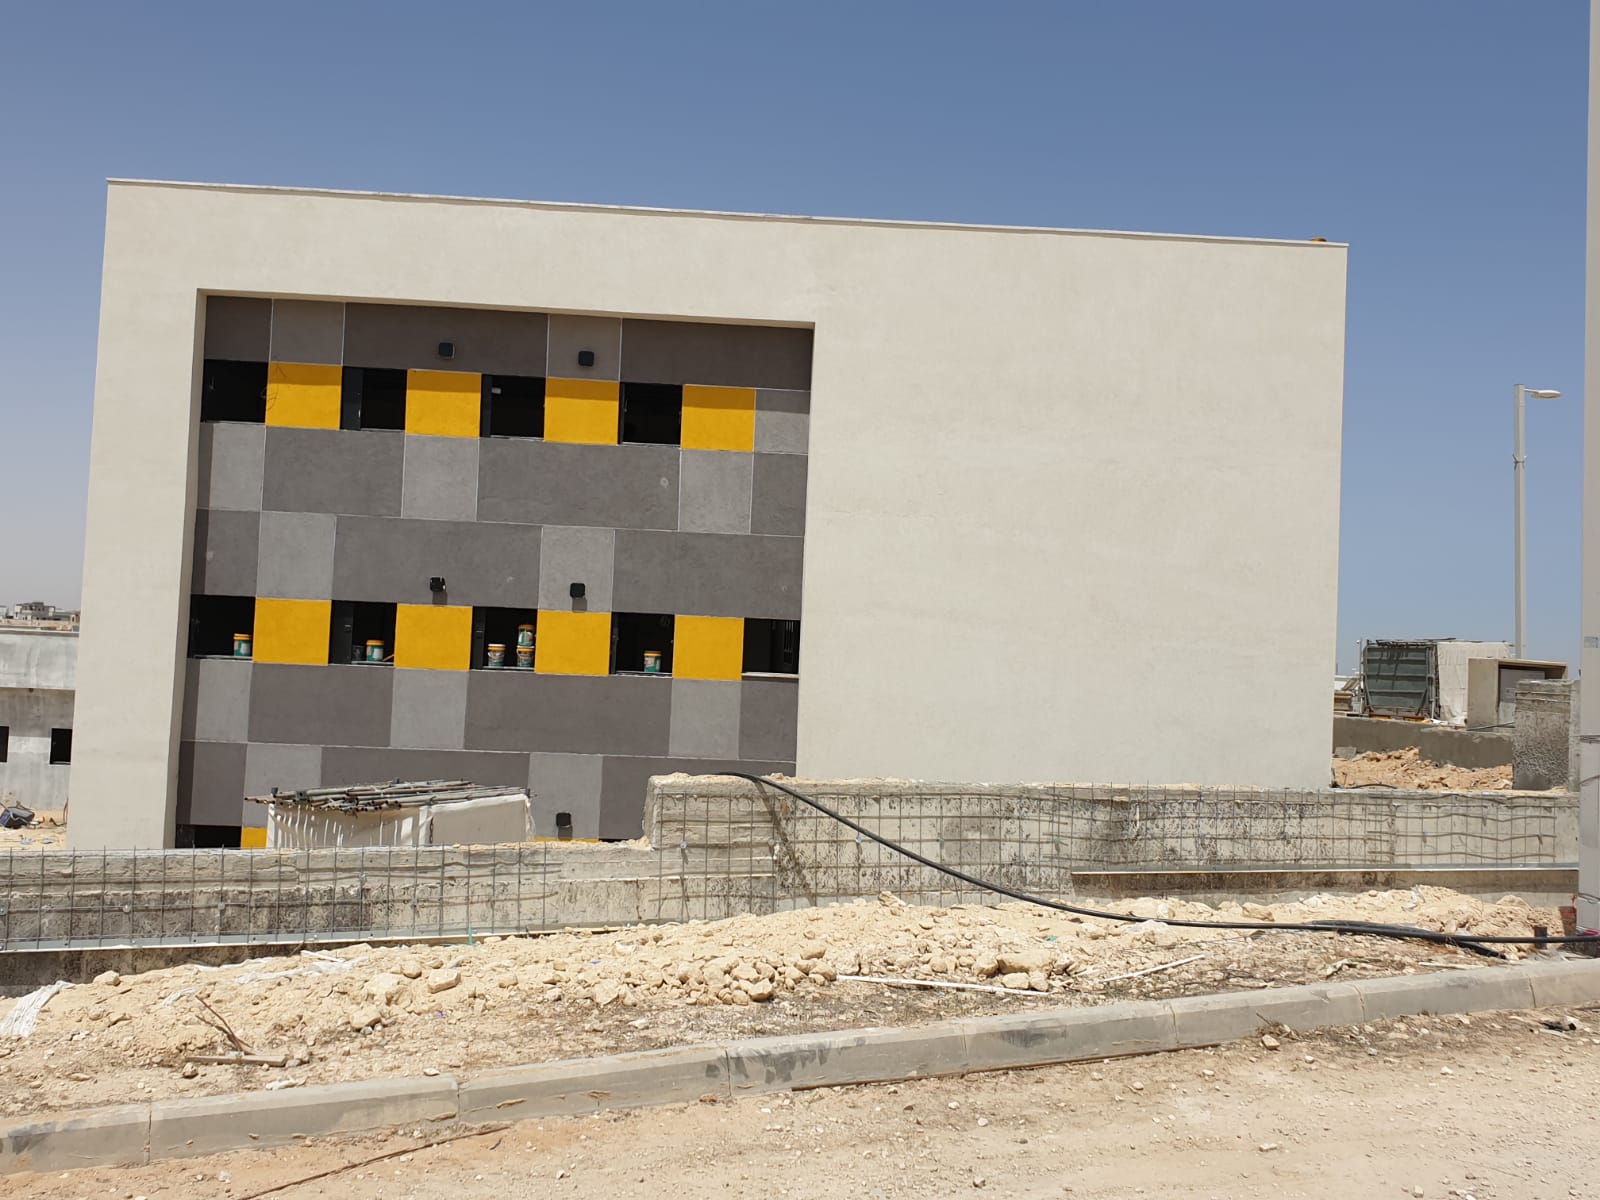 בית הספר בשלבי בנייה בימים אלה | צילום: באדיבות עיריית באר שבע